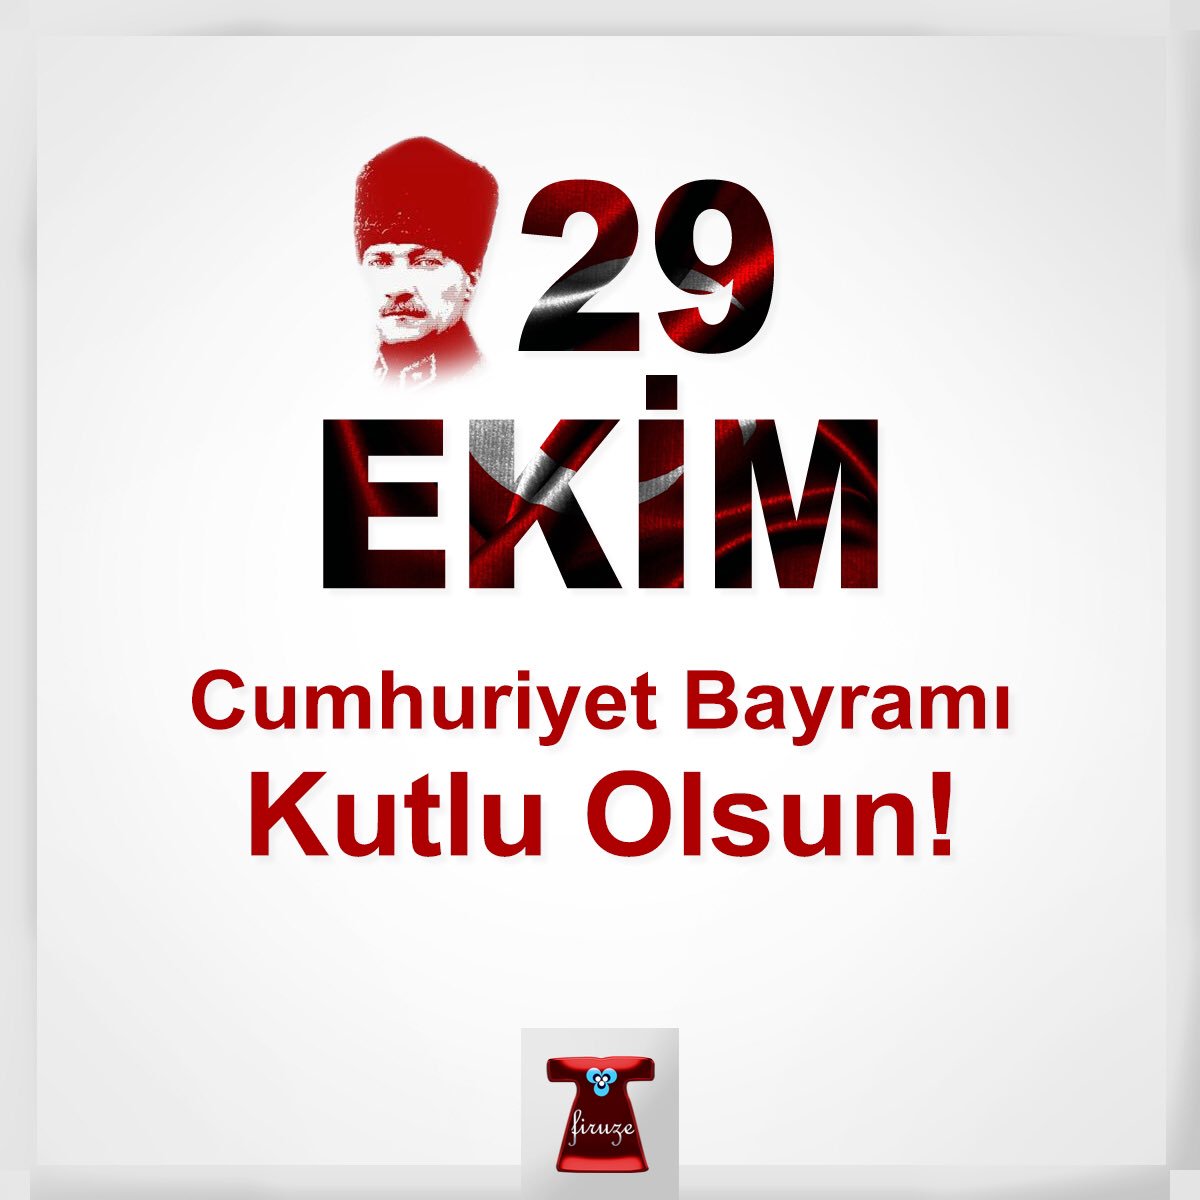 Cumhuriyetimizin 95. yılı kutlu olsun! #29ekim #29ekimcumhuriyetbayramı